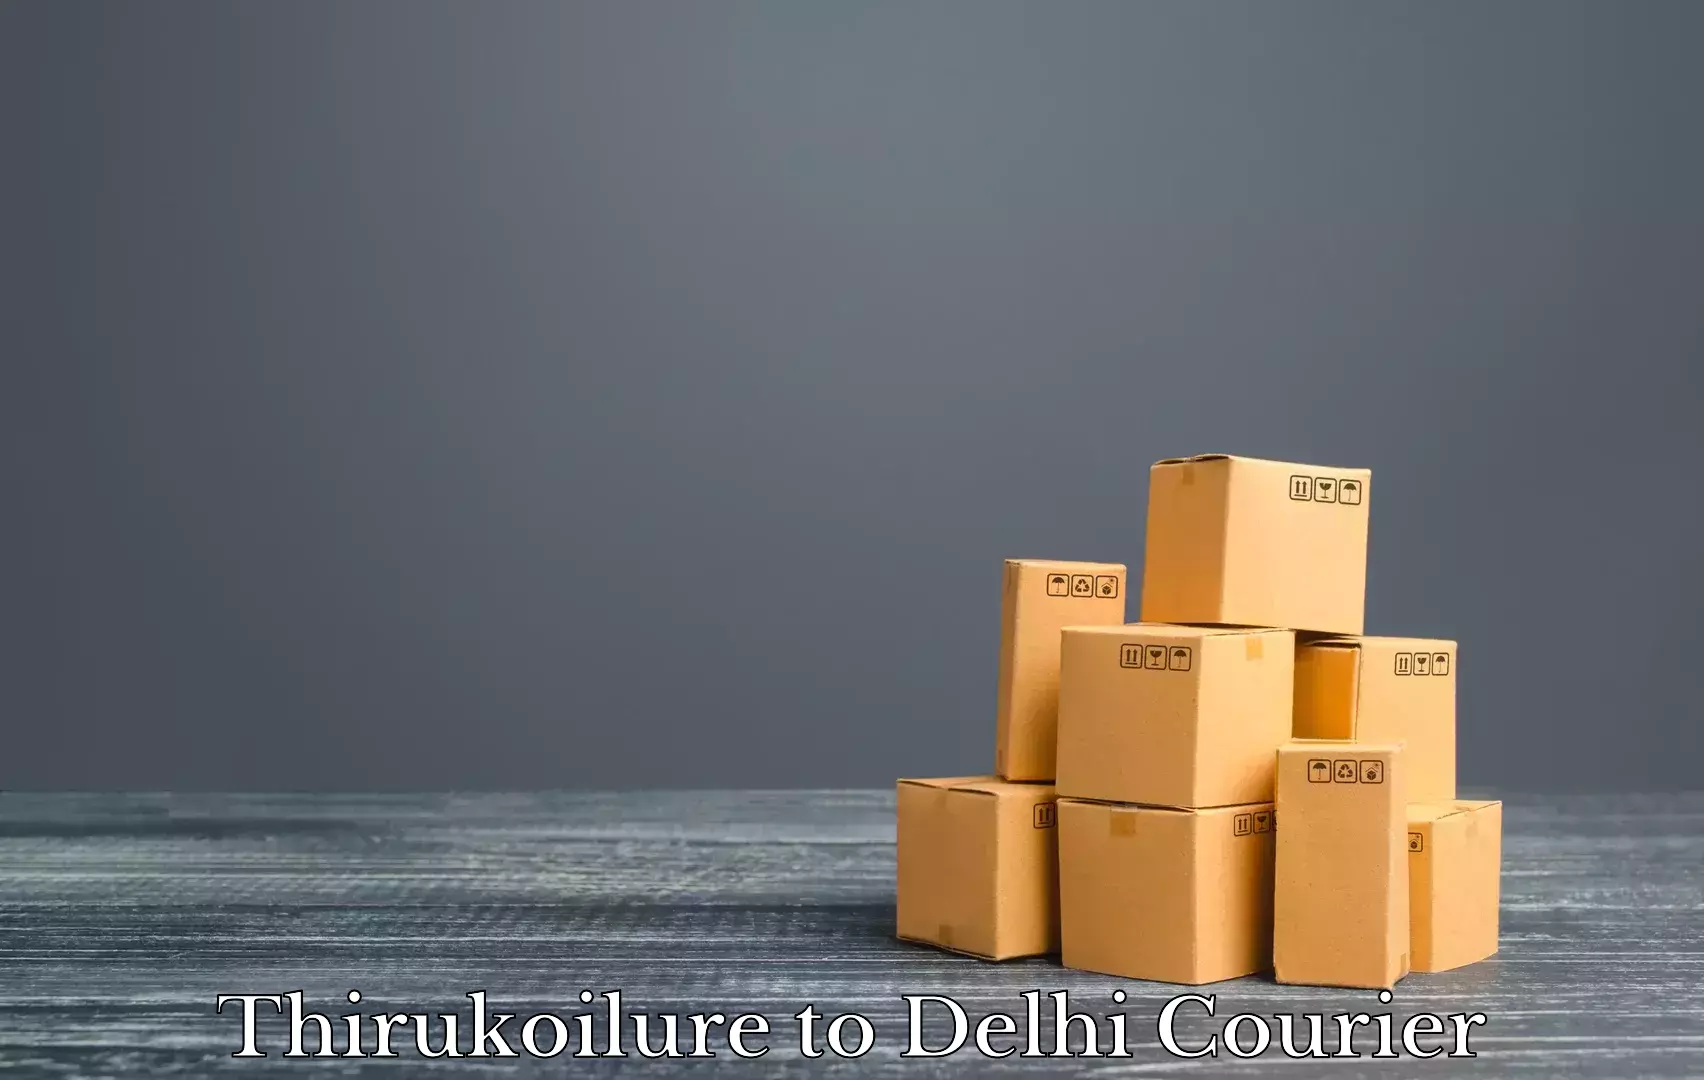 Tailored moving packages Thirukoilure to Jawaharlal Nehru University New Delhi